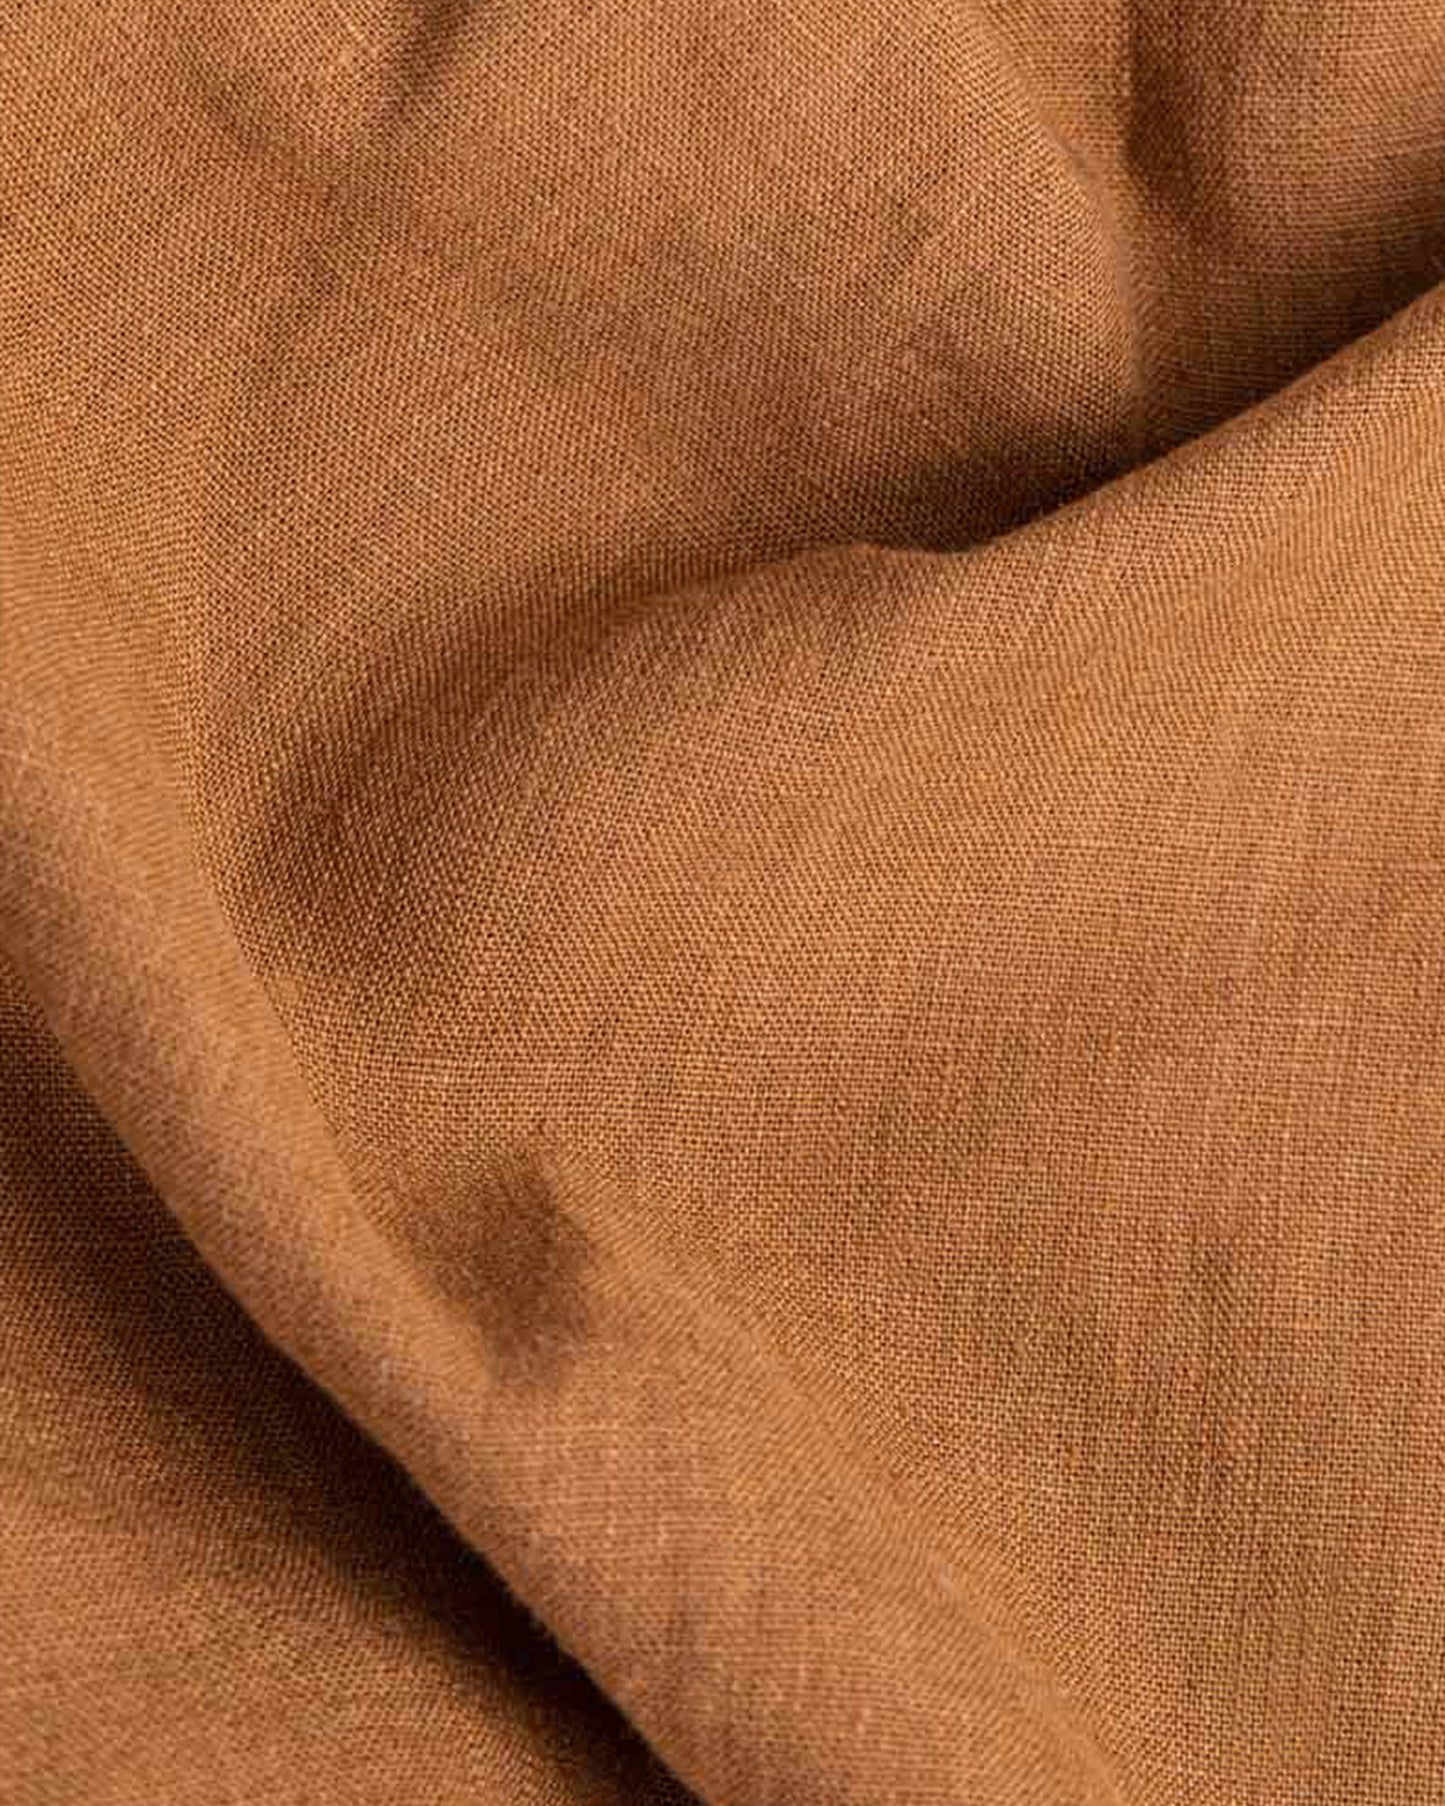 Cinnamon linen duvet cover set (3 pcs) - sneakstylesanctums